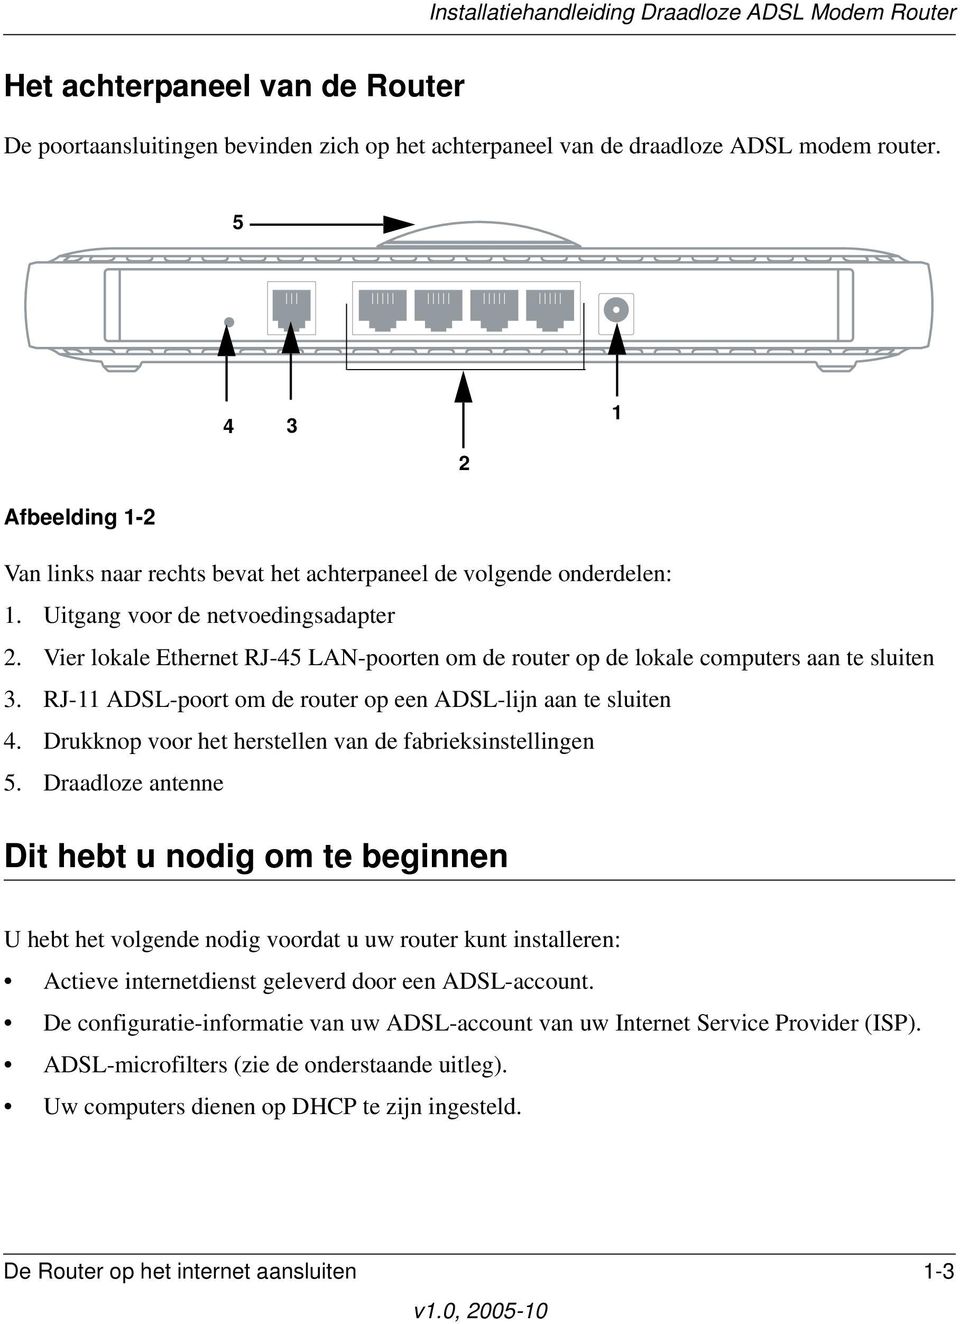 Vier lokale Ethernet RJ-45 LAN-poorten om de router op de lokale computers aan te sluiten 3. RJ-11 ADSL-poort om de router op een ADSL-lijn aan te sluiten 4.